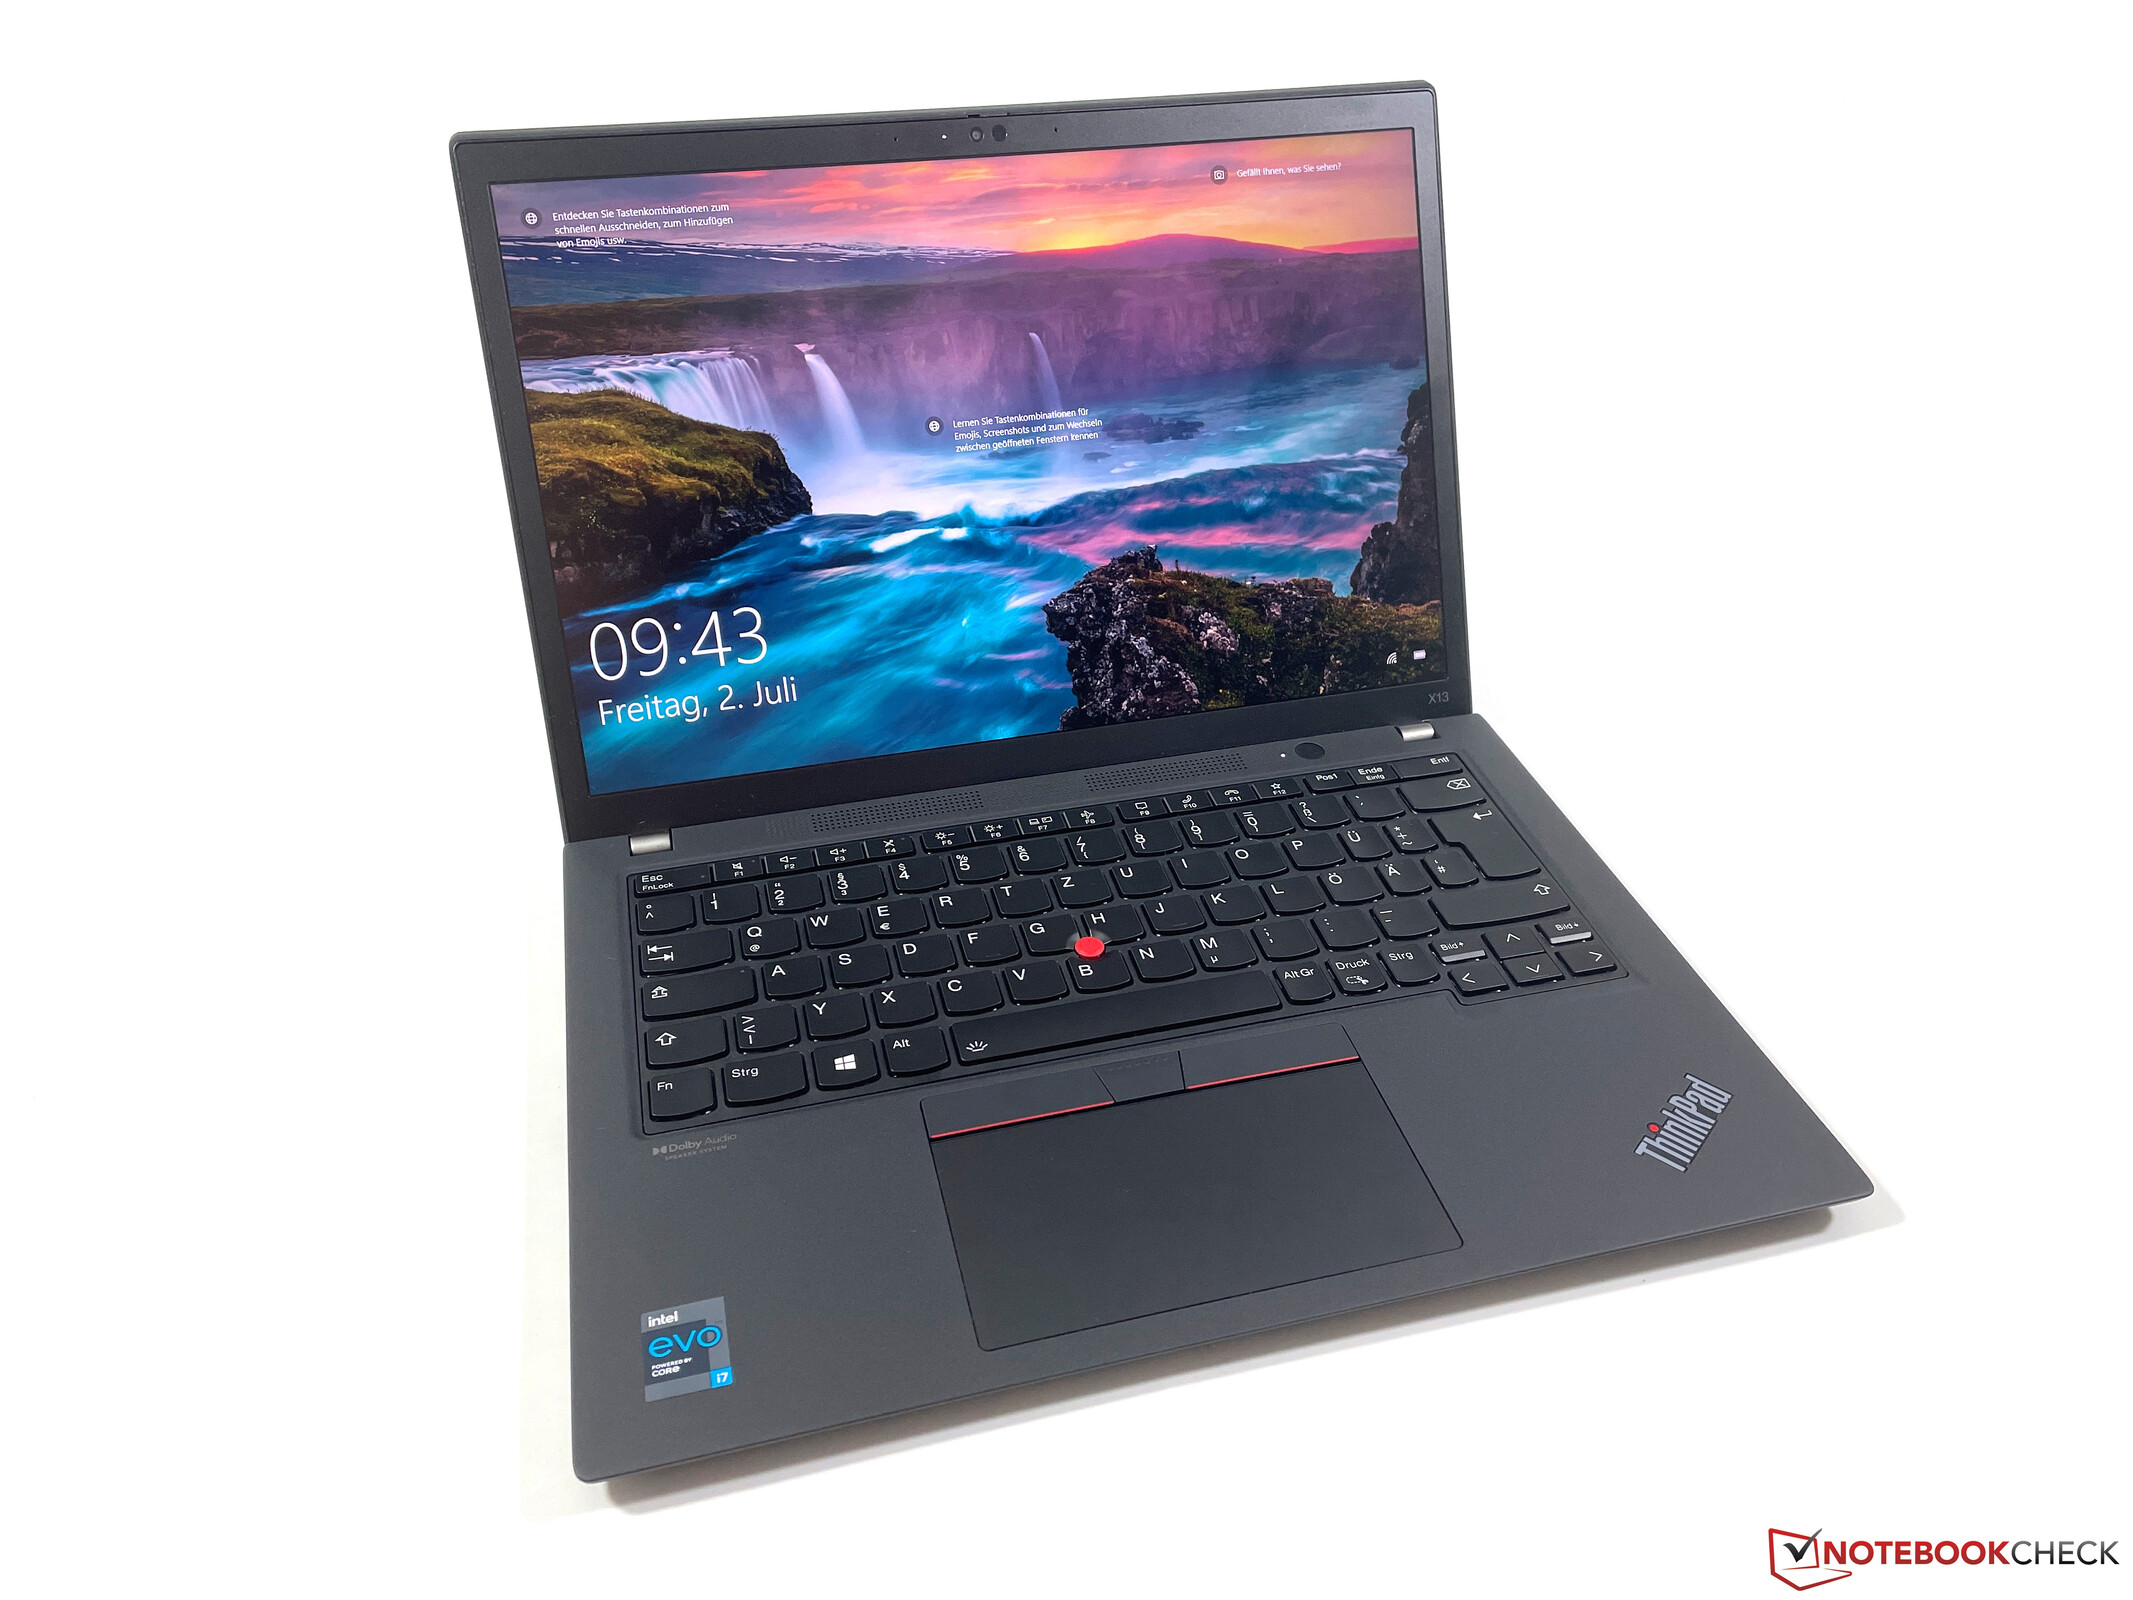 Lenovo equipaggia il nuovo ThinkPad X13 G2 con display 16:10 e